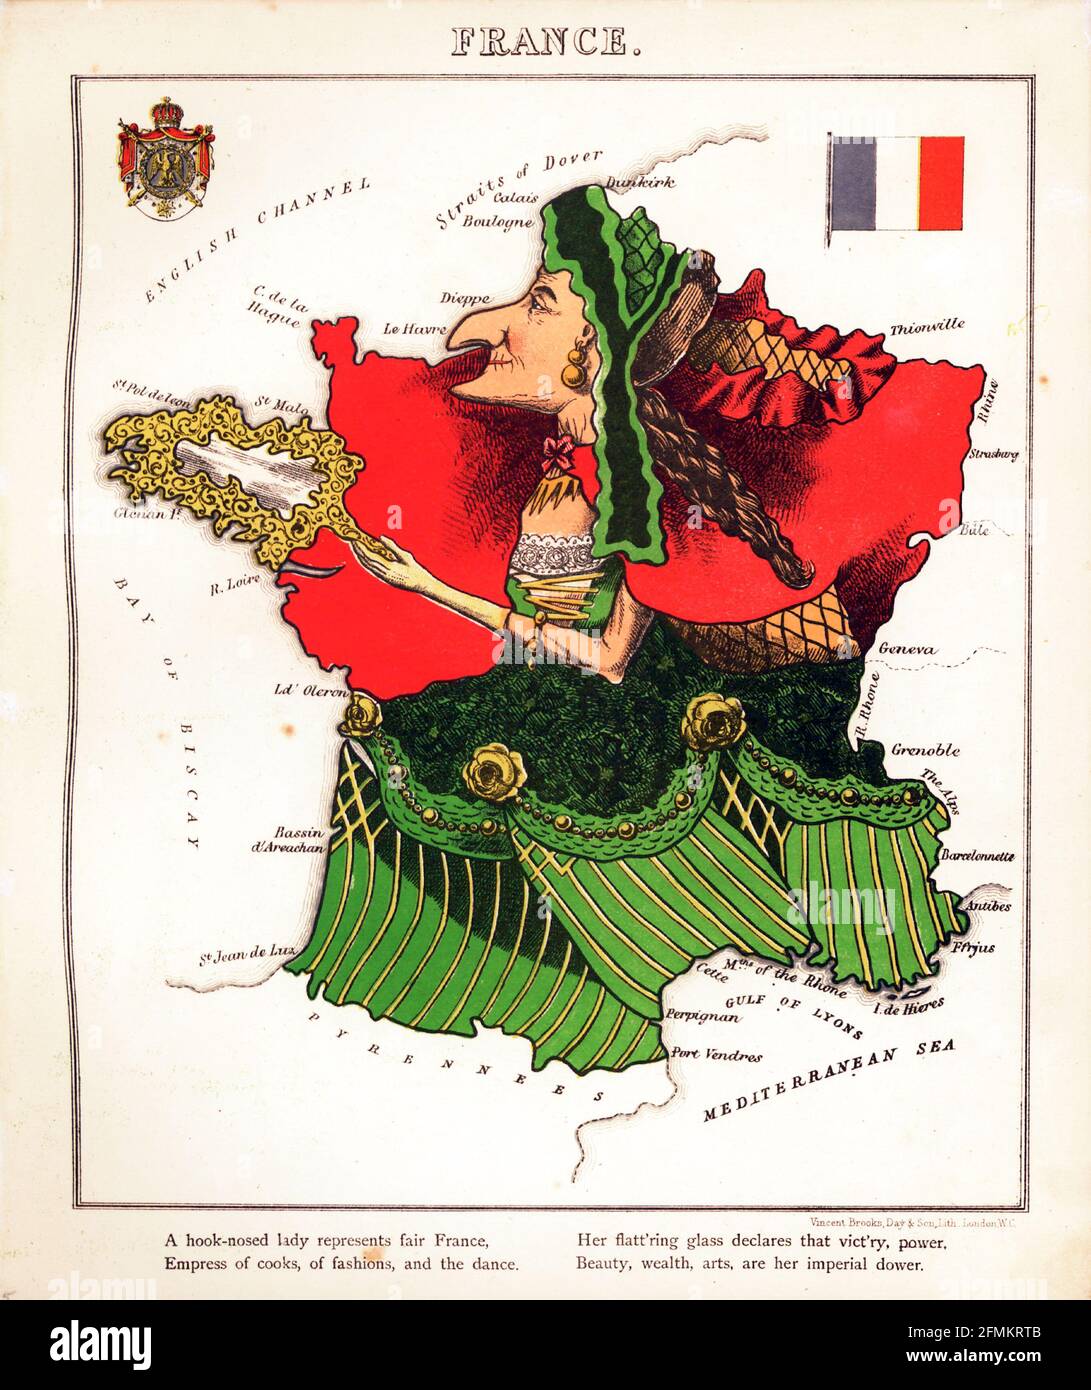 Frankreich – geografischer Spaß. Illustrierte satirische/kartografische Karte. Veröffentlicht in London von der Firma Hodder und Stoughton im Jahr 1869. Stockfoto